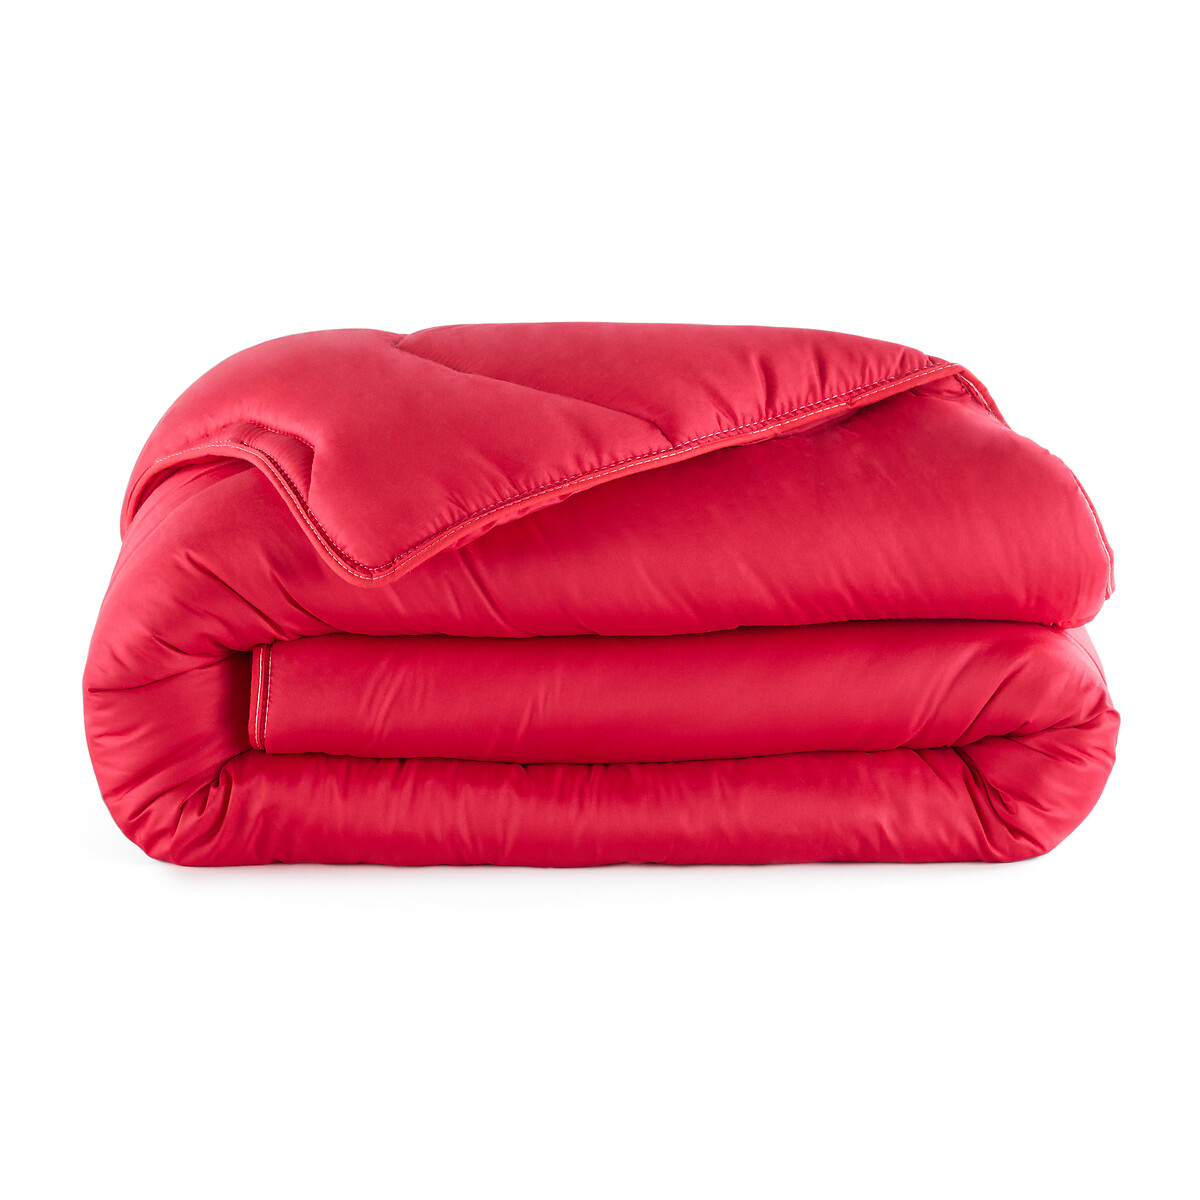 Одеяло La Redoute Rverie Color  гм 260 x 240 см красный, размер 260 x 240 см - фото 2